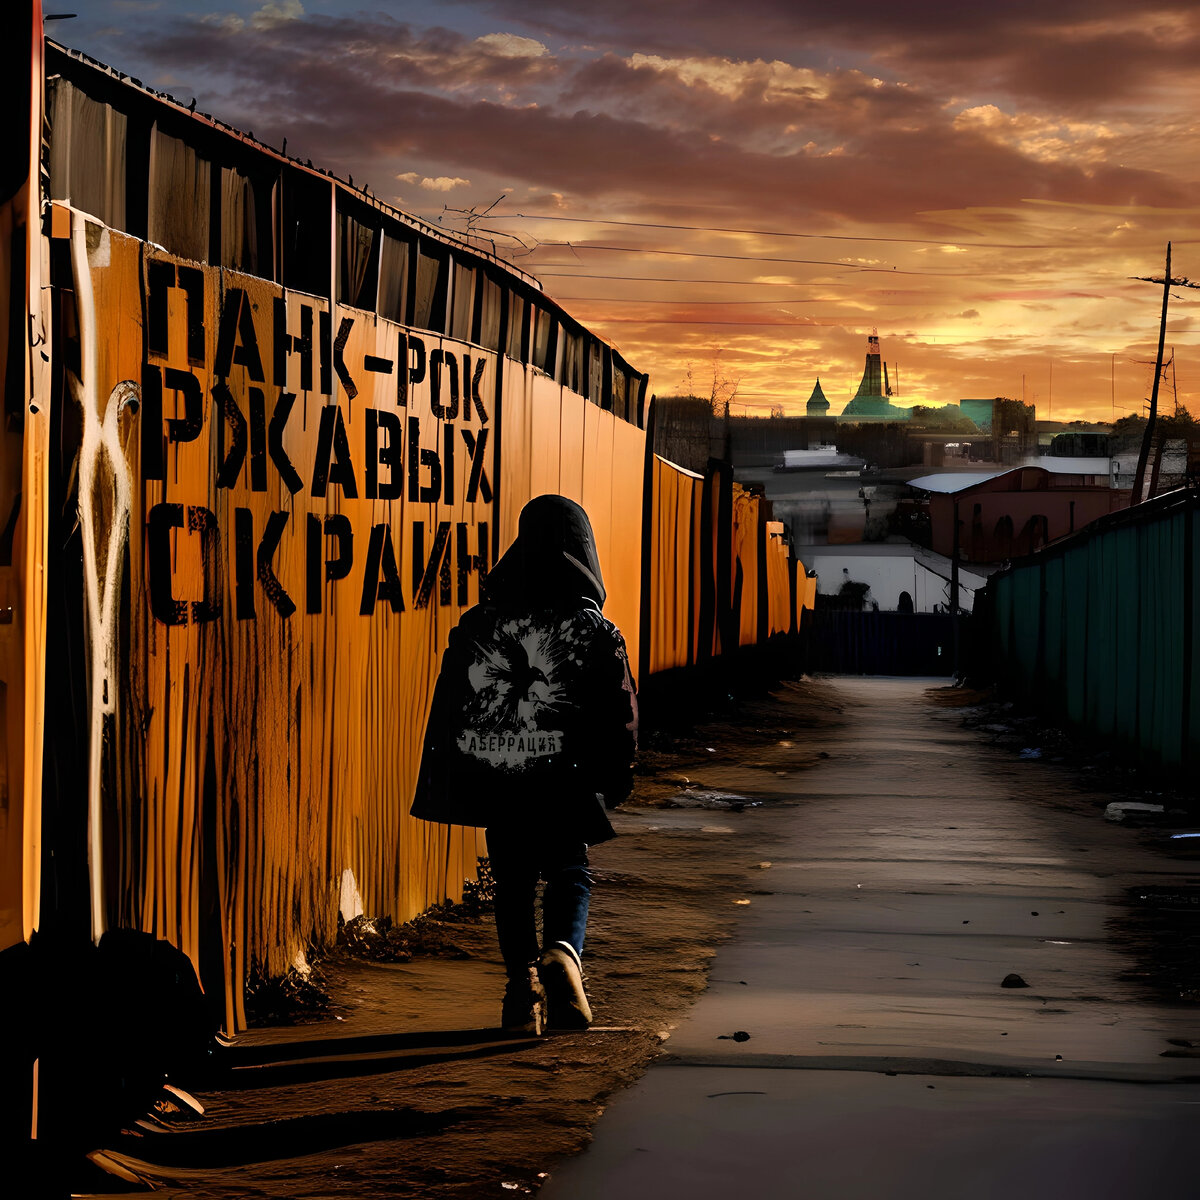 Обложка альбома группы Аберрация “ПАНК-РОК РЖАВЫХ ОКРАИН” 